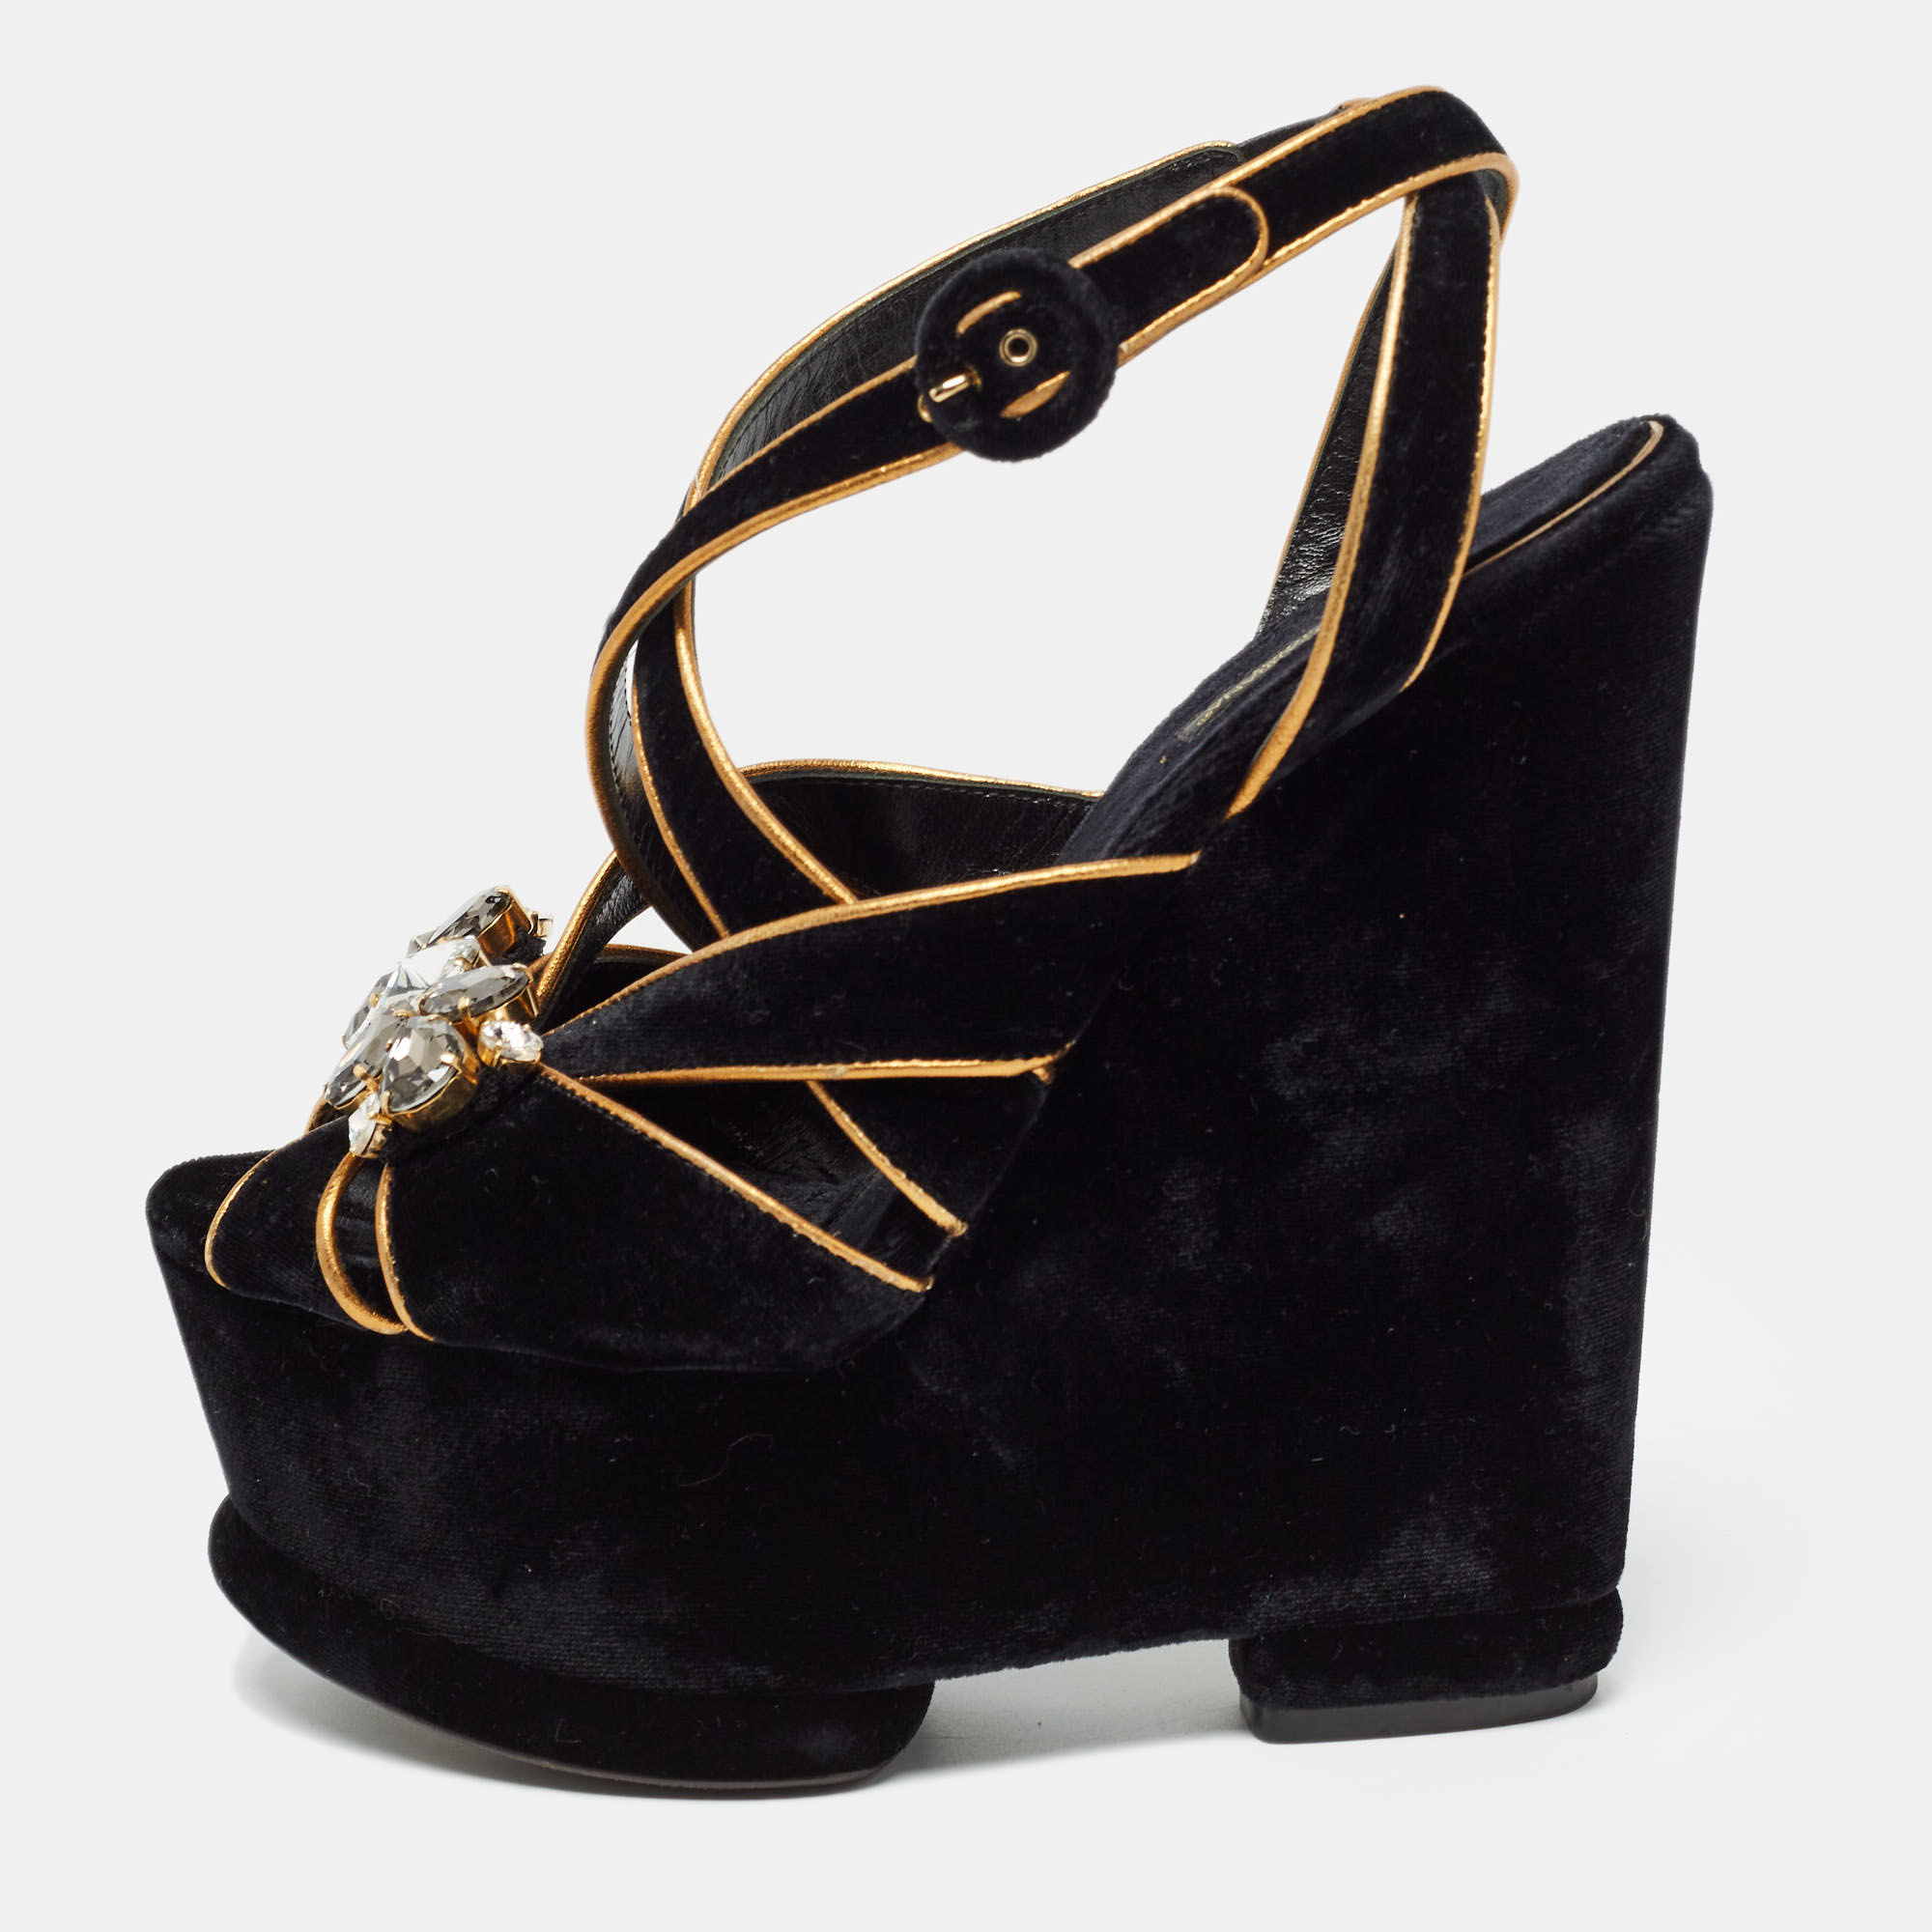 Dolce & gabbana black/gold velvet and leather crystal embellished sandals size 39